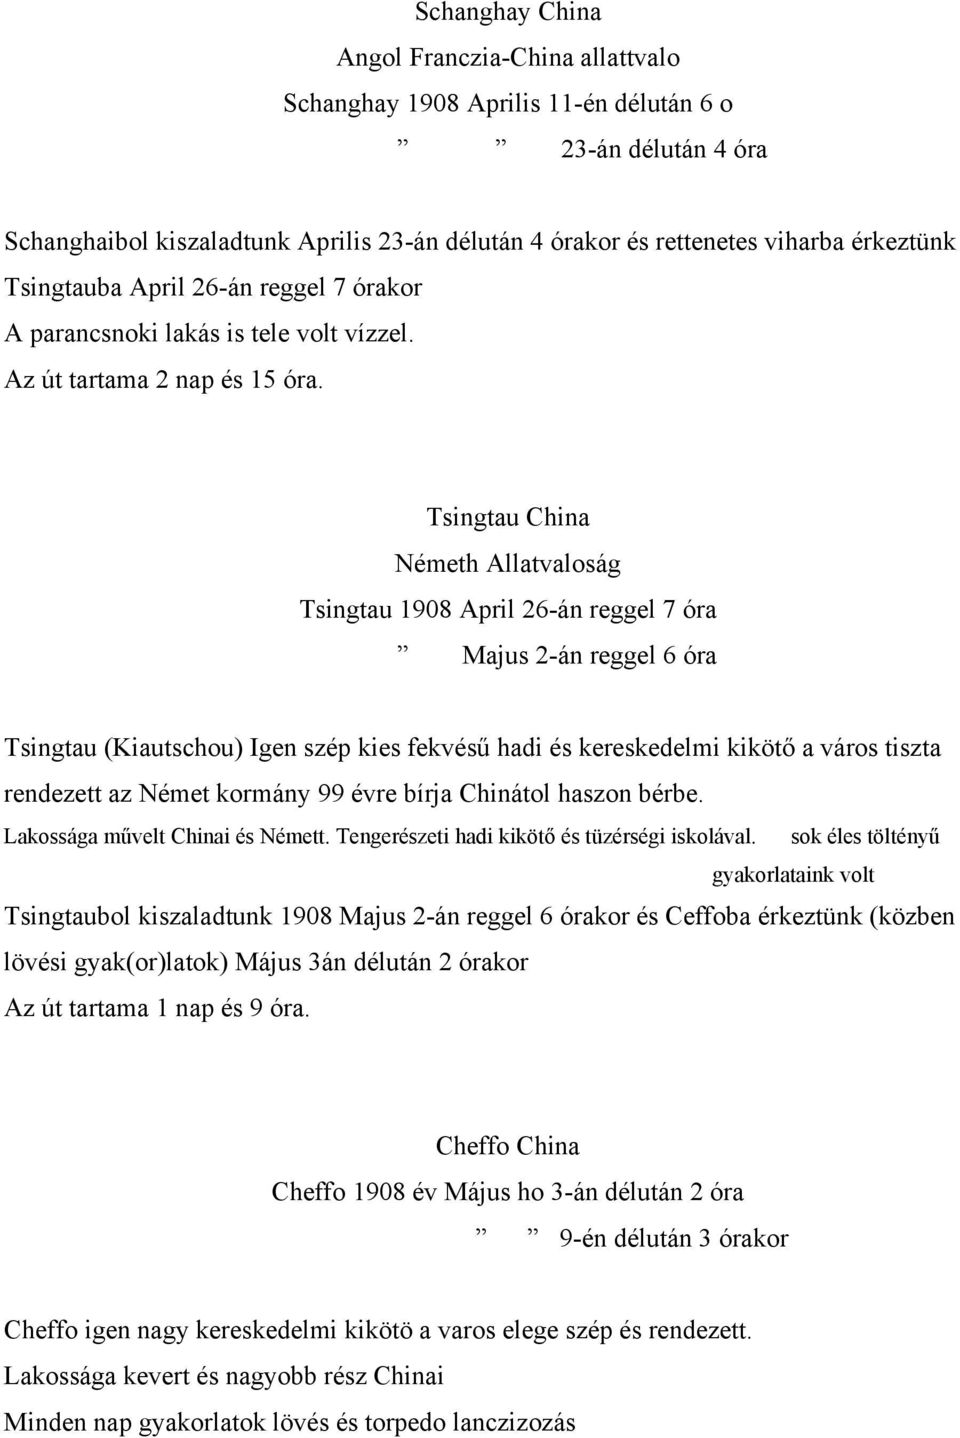 Tsingtau China Németh Allatvaloság Tsingtau 1908 April 26-án reggel 7 óra Majus 2-án reggel 6 óra Tsingtau (Kiautschou) Igen szép kies fekvésű hadi és kereskedelmi kikötő a város tiszta rendezett az